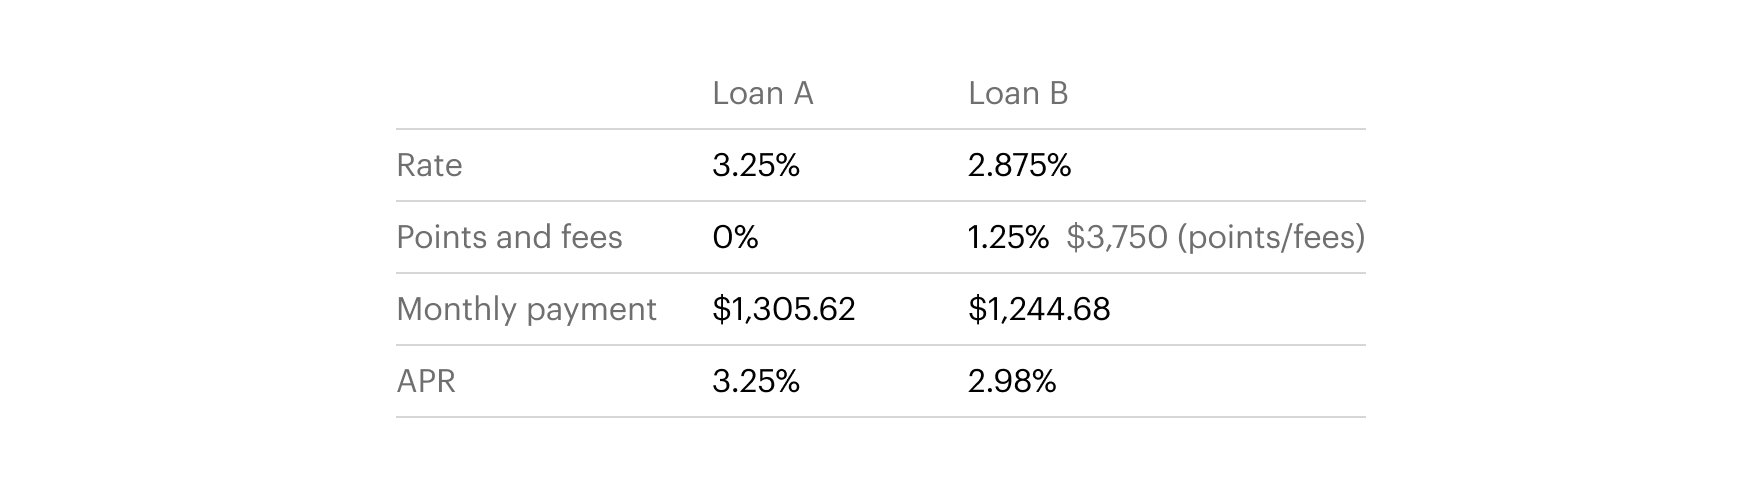 loan types 3